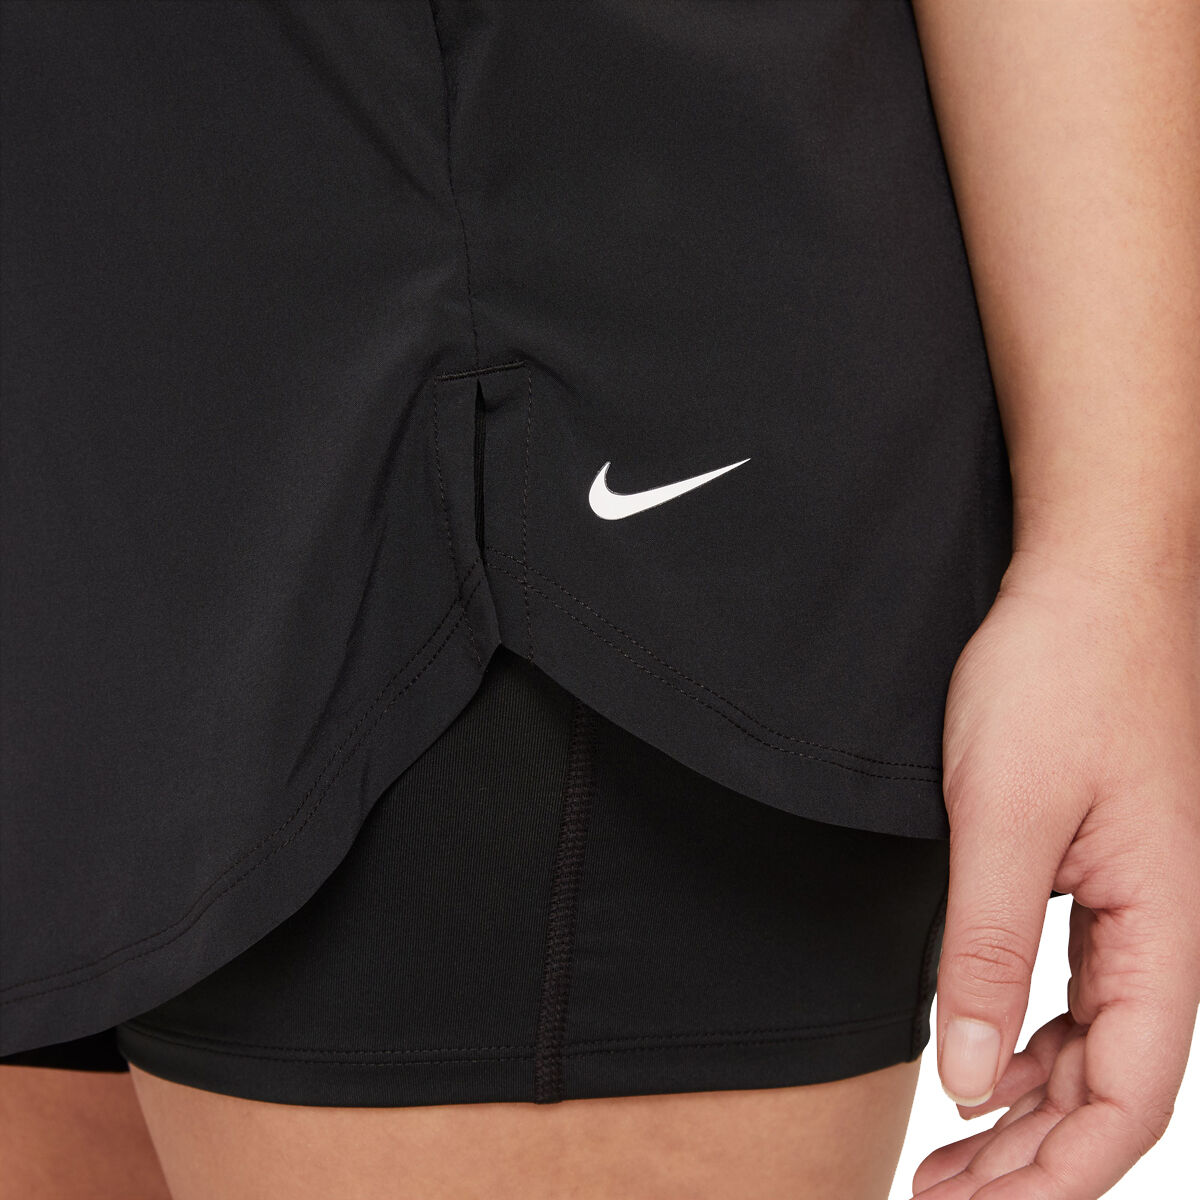 Nike Womens Flex Essential 2 in 1 Training Shorts